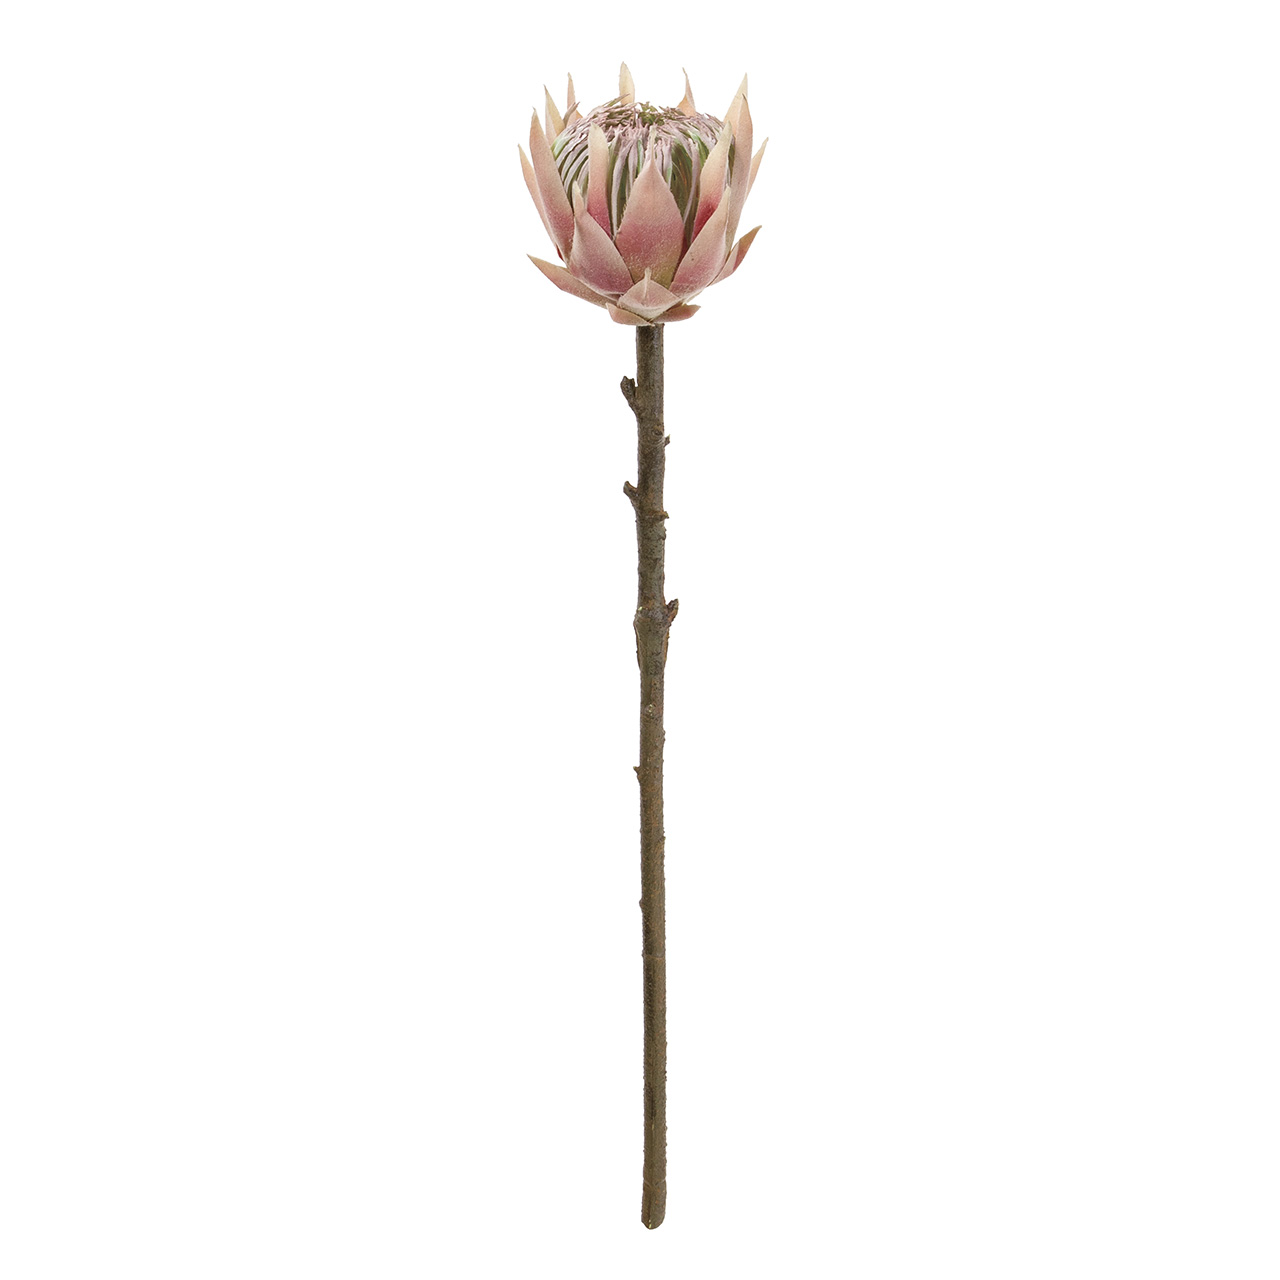 マイフラ 通販 Magiq カラードプロテアs ピンク アーティフィシャルフラワー 造花 Fm 002 ワイルドフラワー プロテア ピンク Magiq アーティフィシャルフラワー 造花 全国にmagiq 花器 花資材などをお届けします